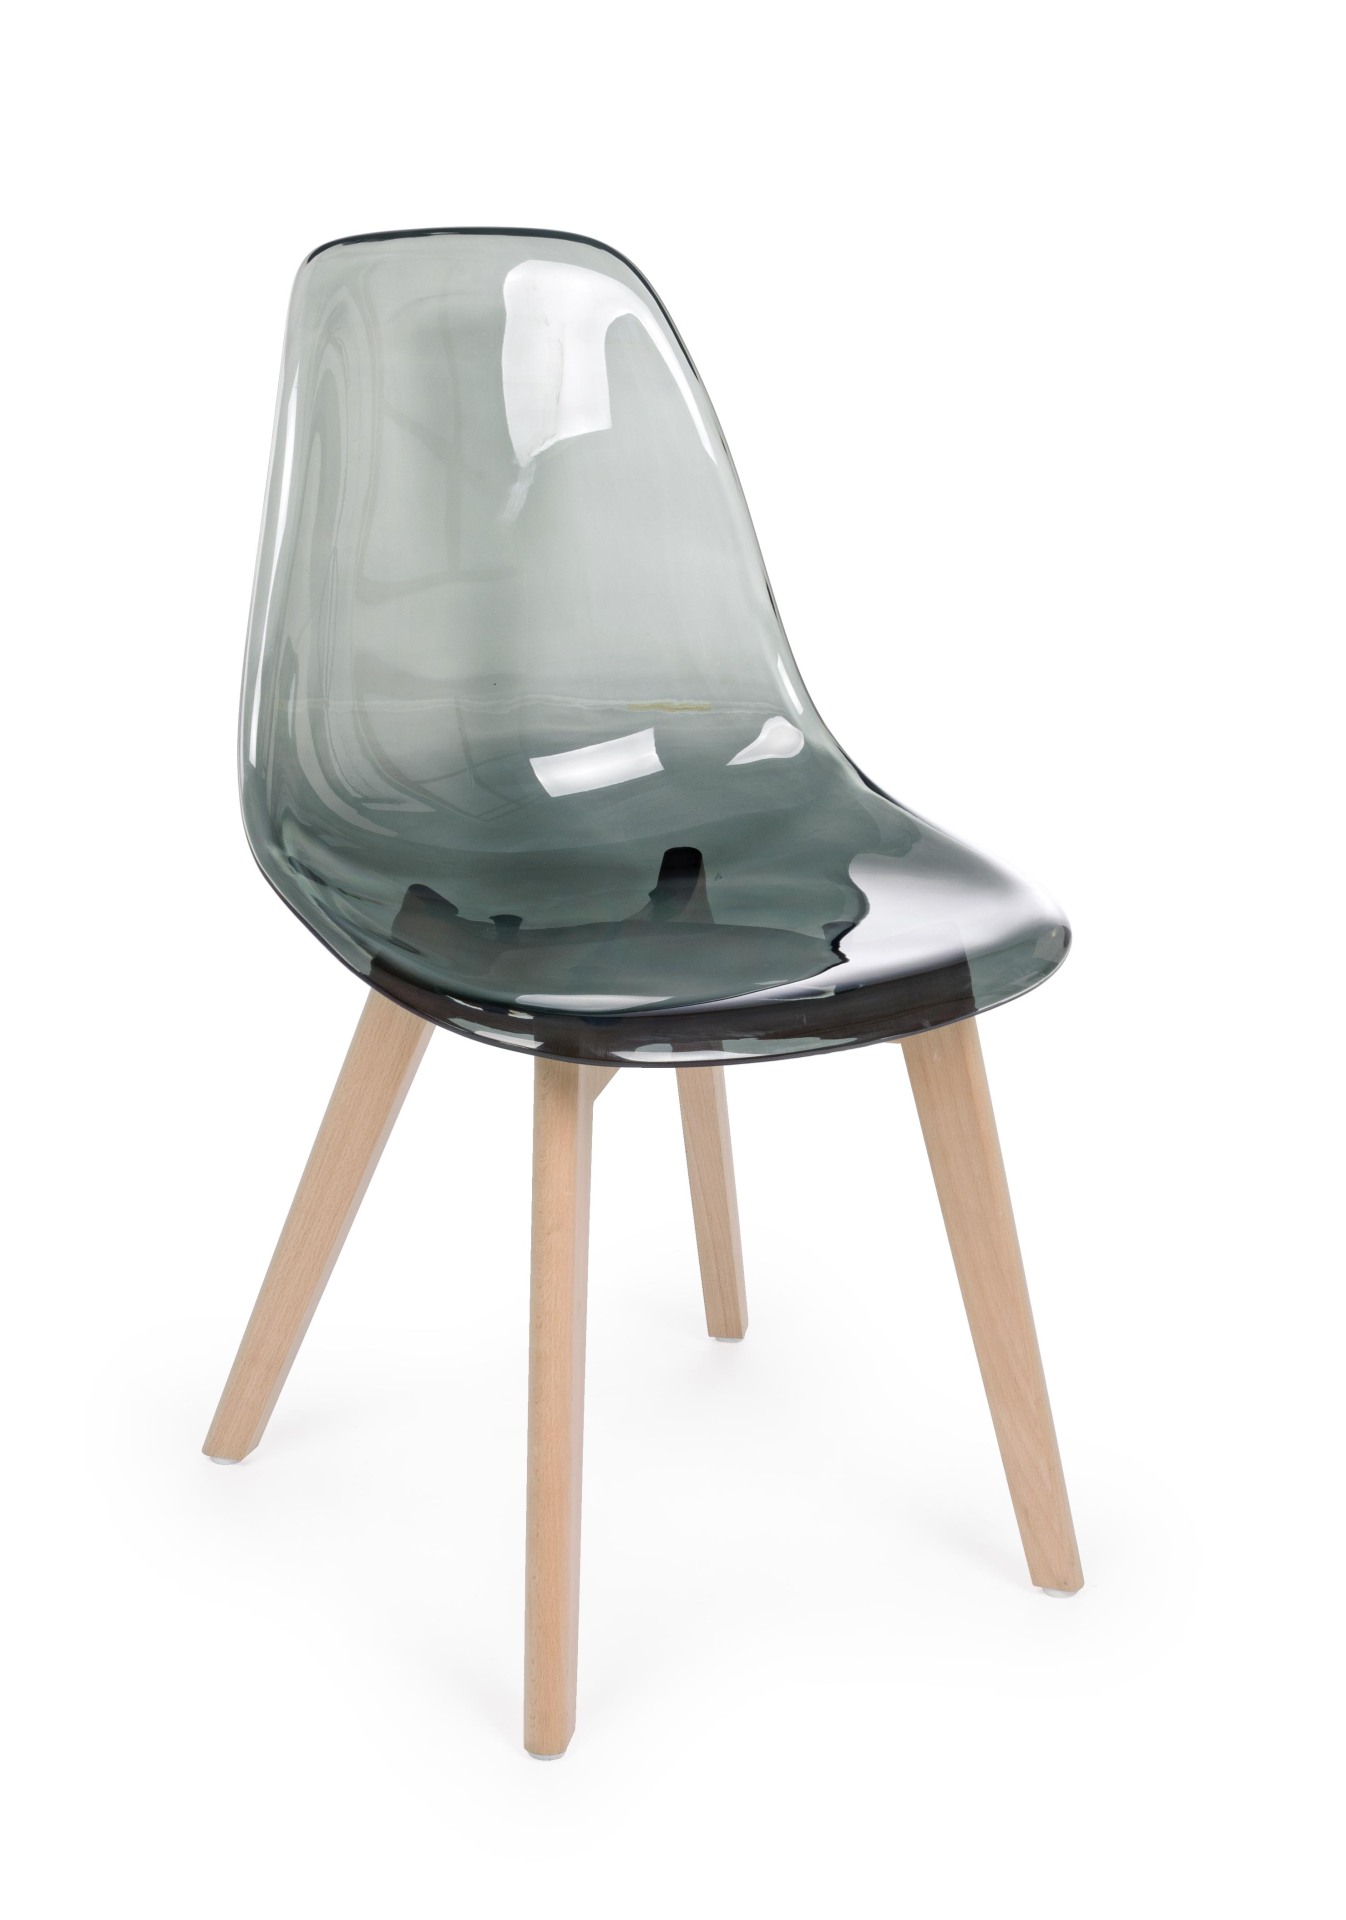 Der Stuhl Easy überzeugt mit seinem modernem aber auch besonderem Design. Gefertigt wurde die Sitzschale aus Kunststoff, welche einen grauen Farbton besitzt. Das Gestell ist aus Buchenholz und hat einen natürlichen Farbton. Die Sitzhöhe beträgt 44 cm.